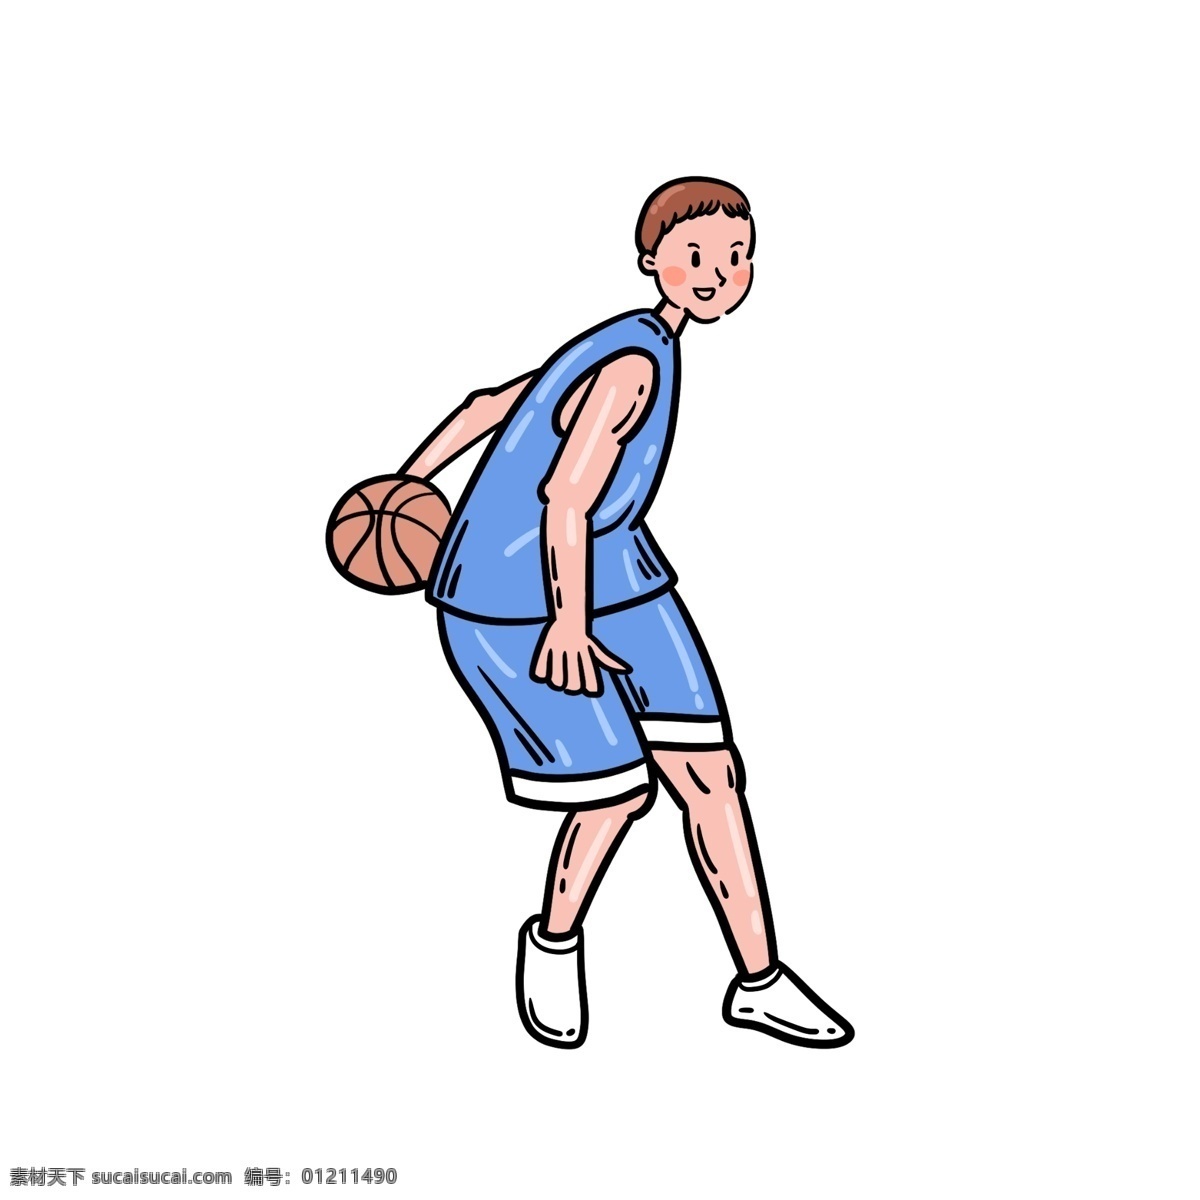 卡通 矢量 免 抠 可爱 篮球 男生 免抠 打篮球 蓝色 篮球衣 小白鞋 运动 夏季 快乐 开心 短裤 短发